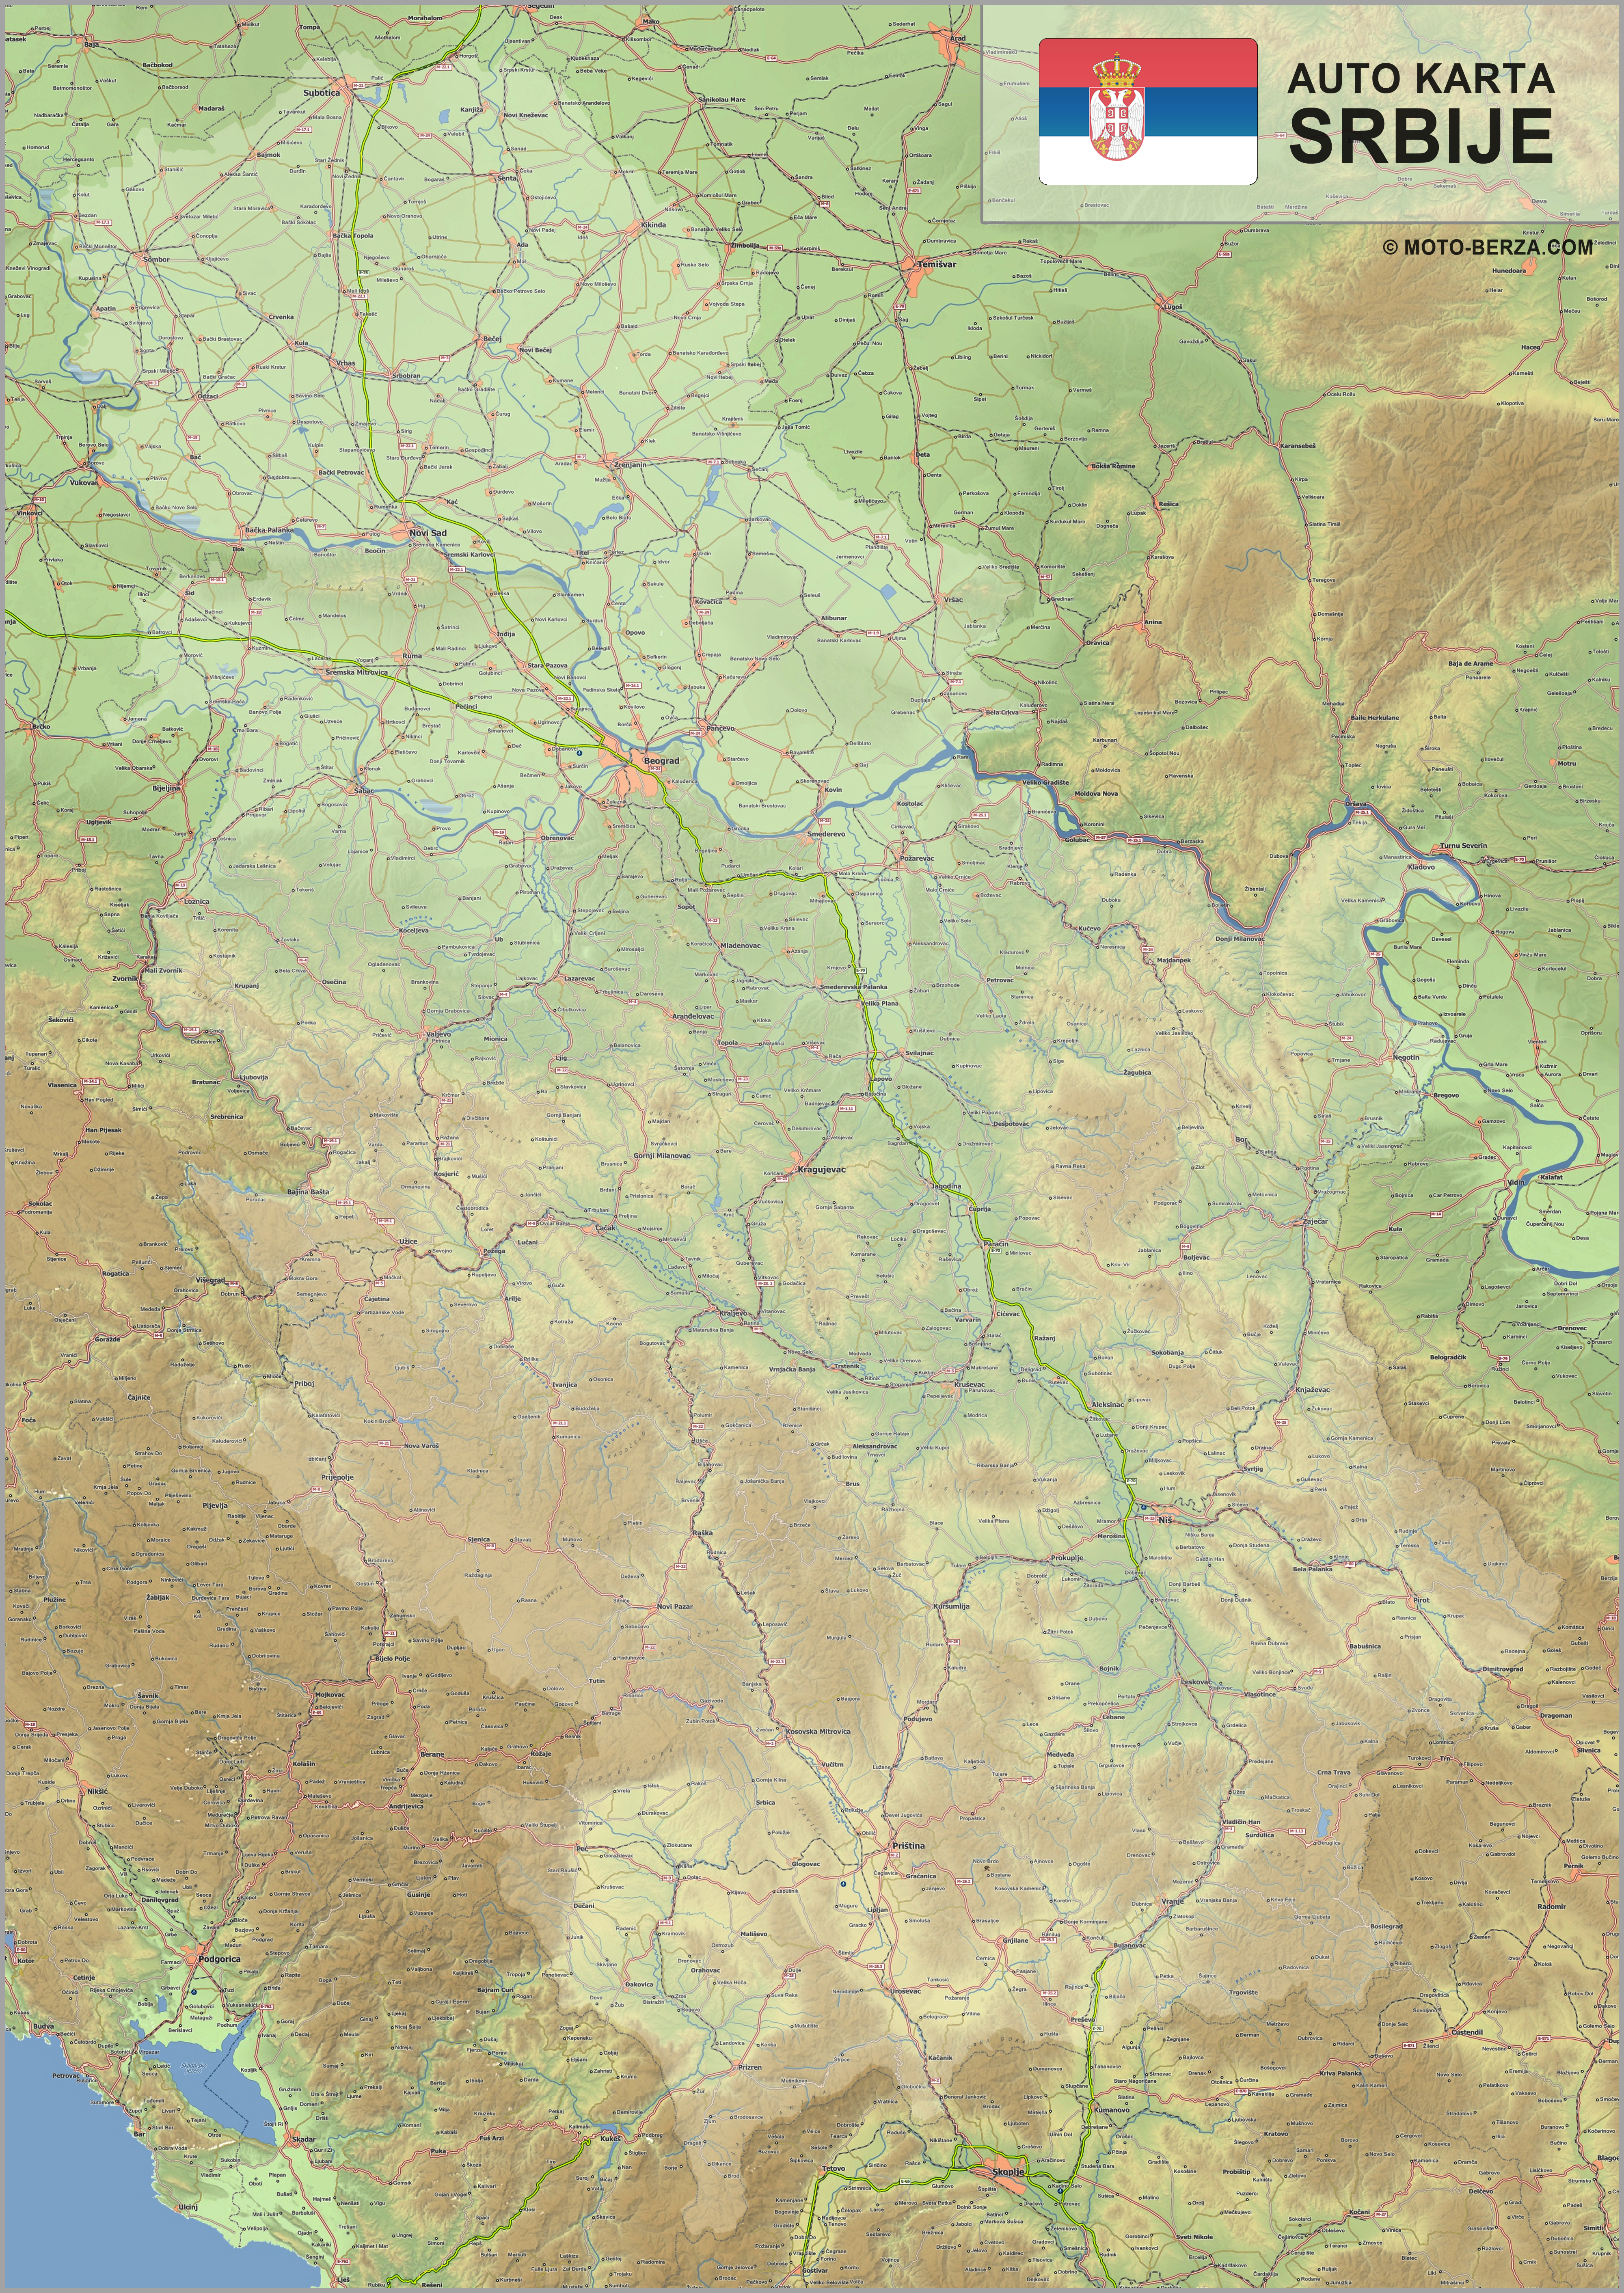 mapa srbije razdaljina u km Mapa srbije   Auto karta Srbije   Geografska karta sa putevima mapa srbije razdaljina u km